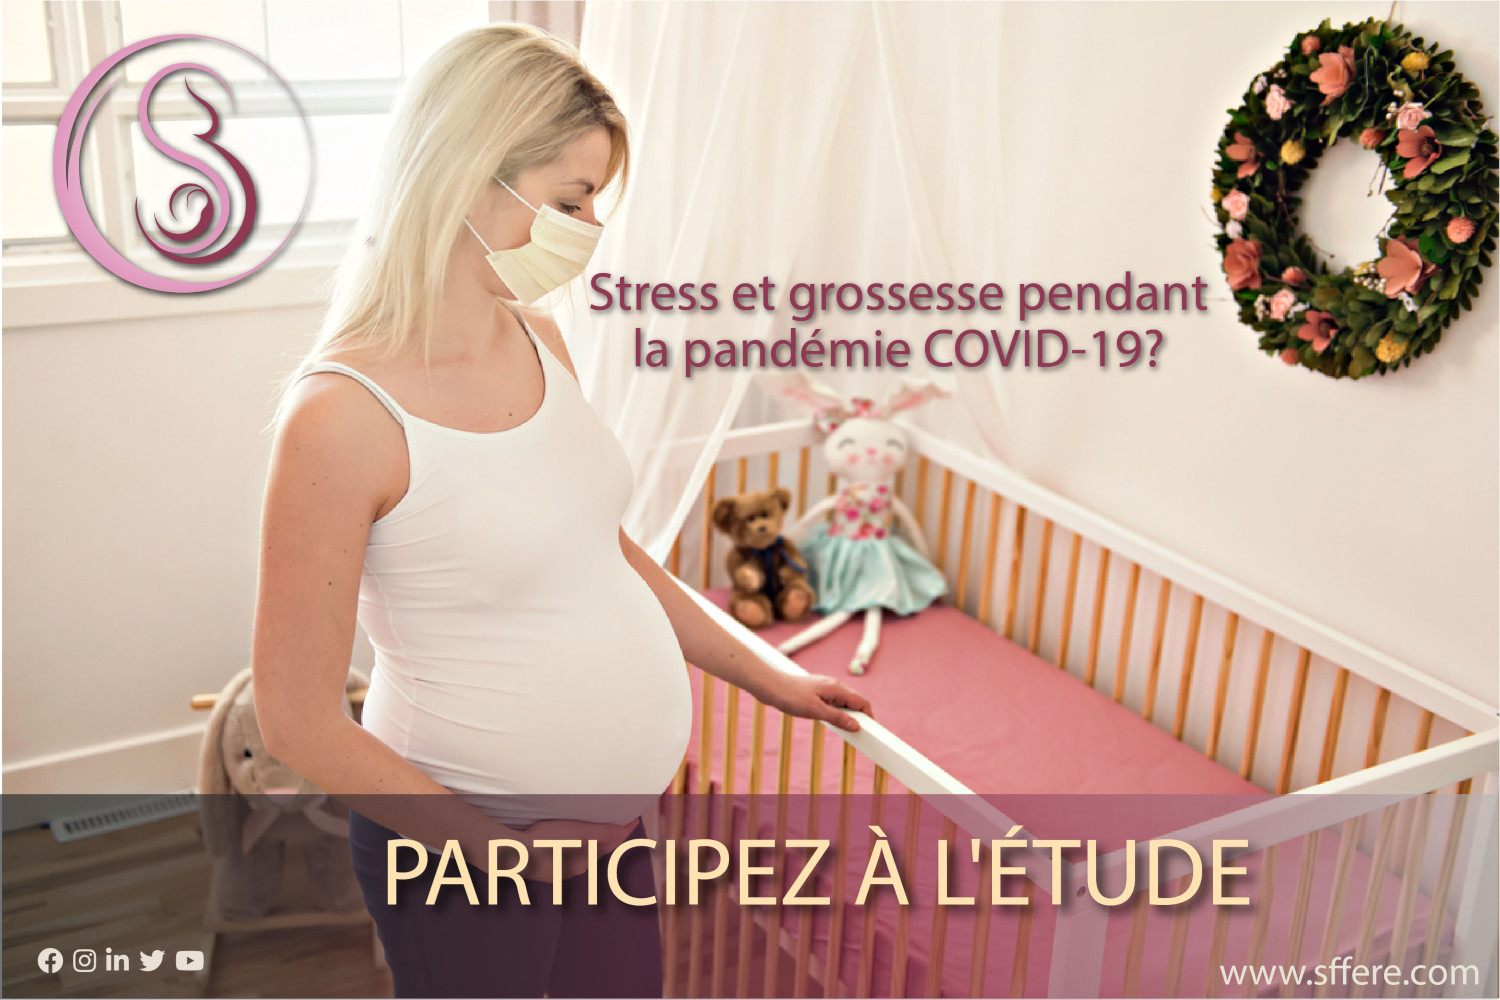 Q: Stress et grossesse pendant la pandémie COVID-19